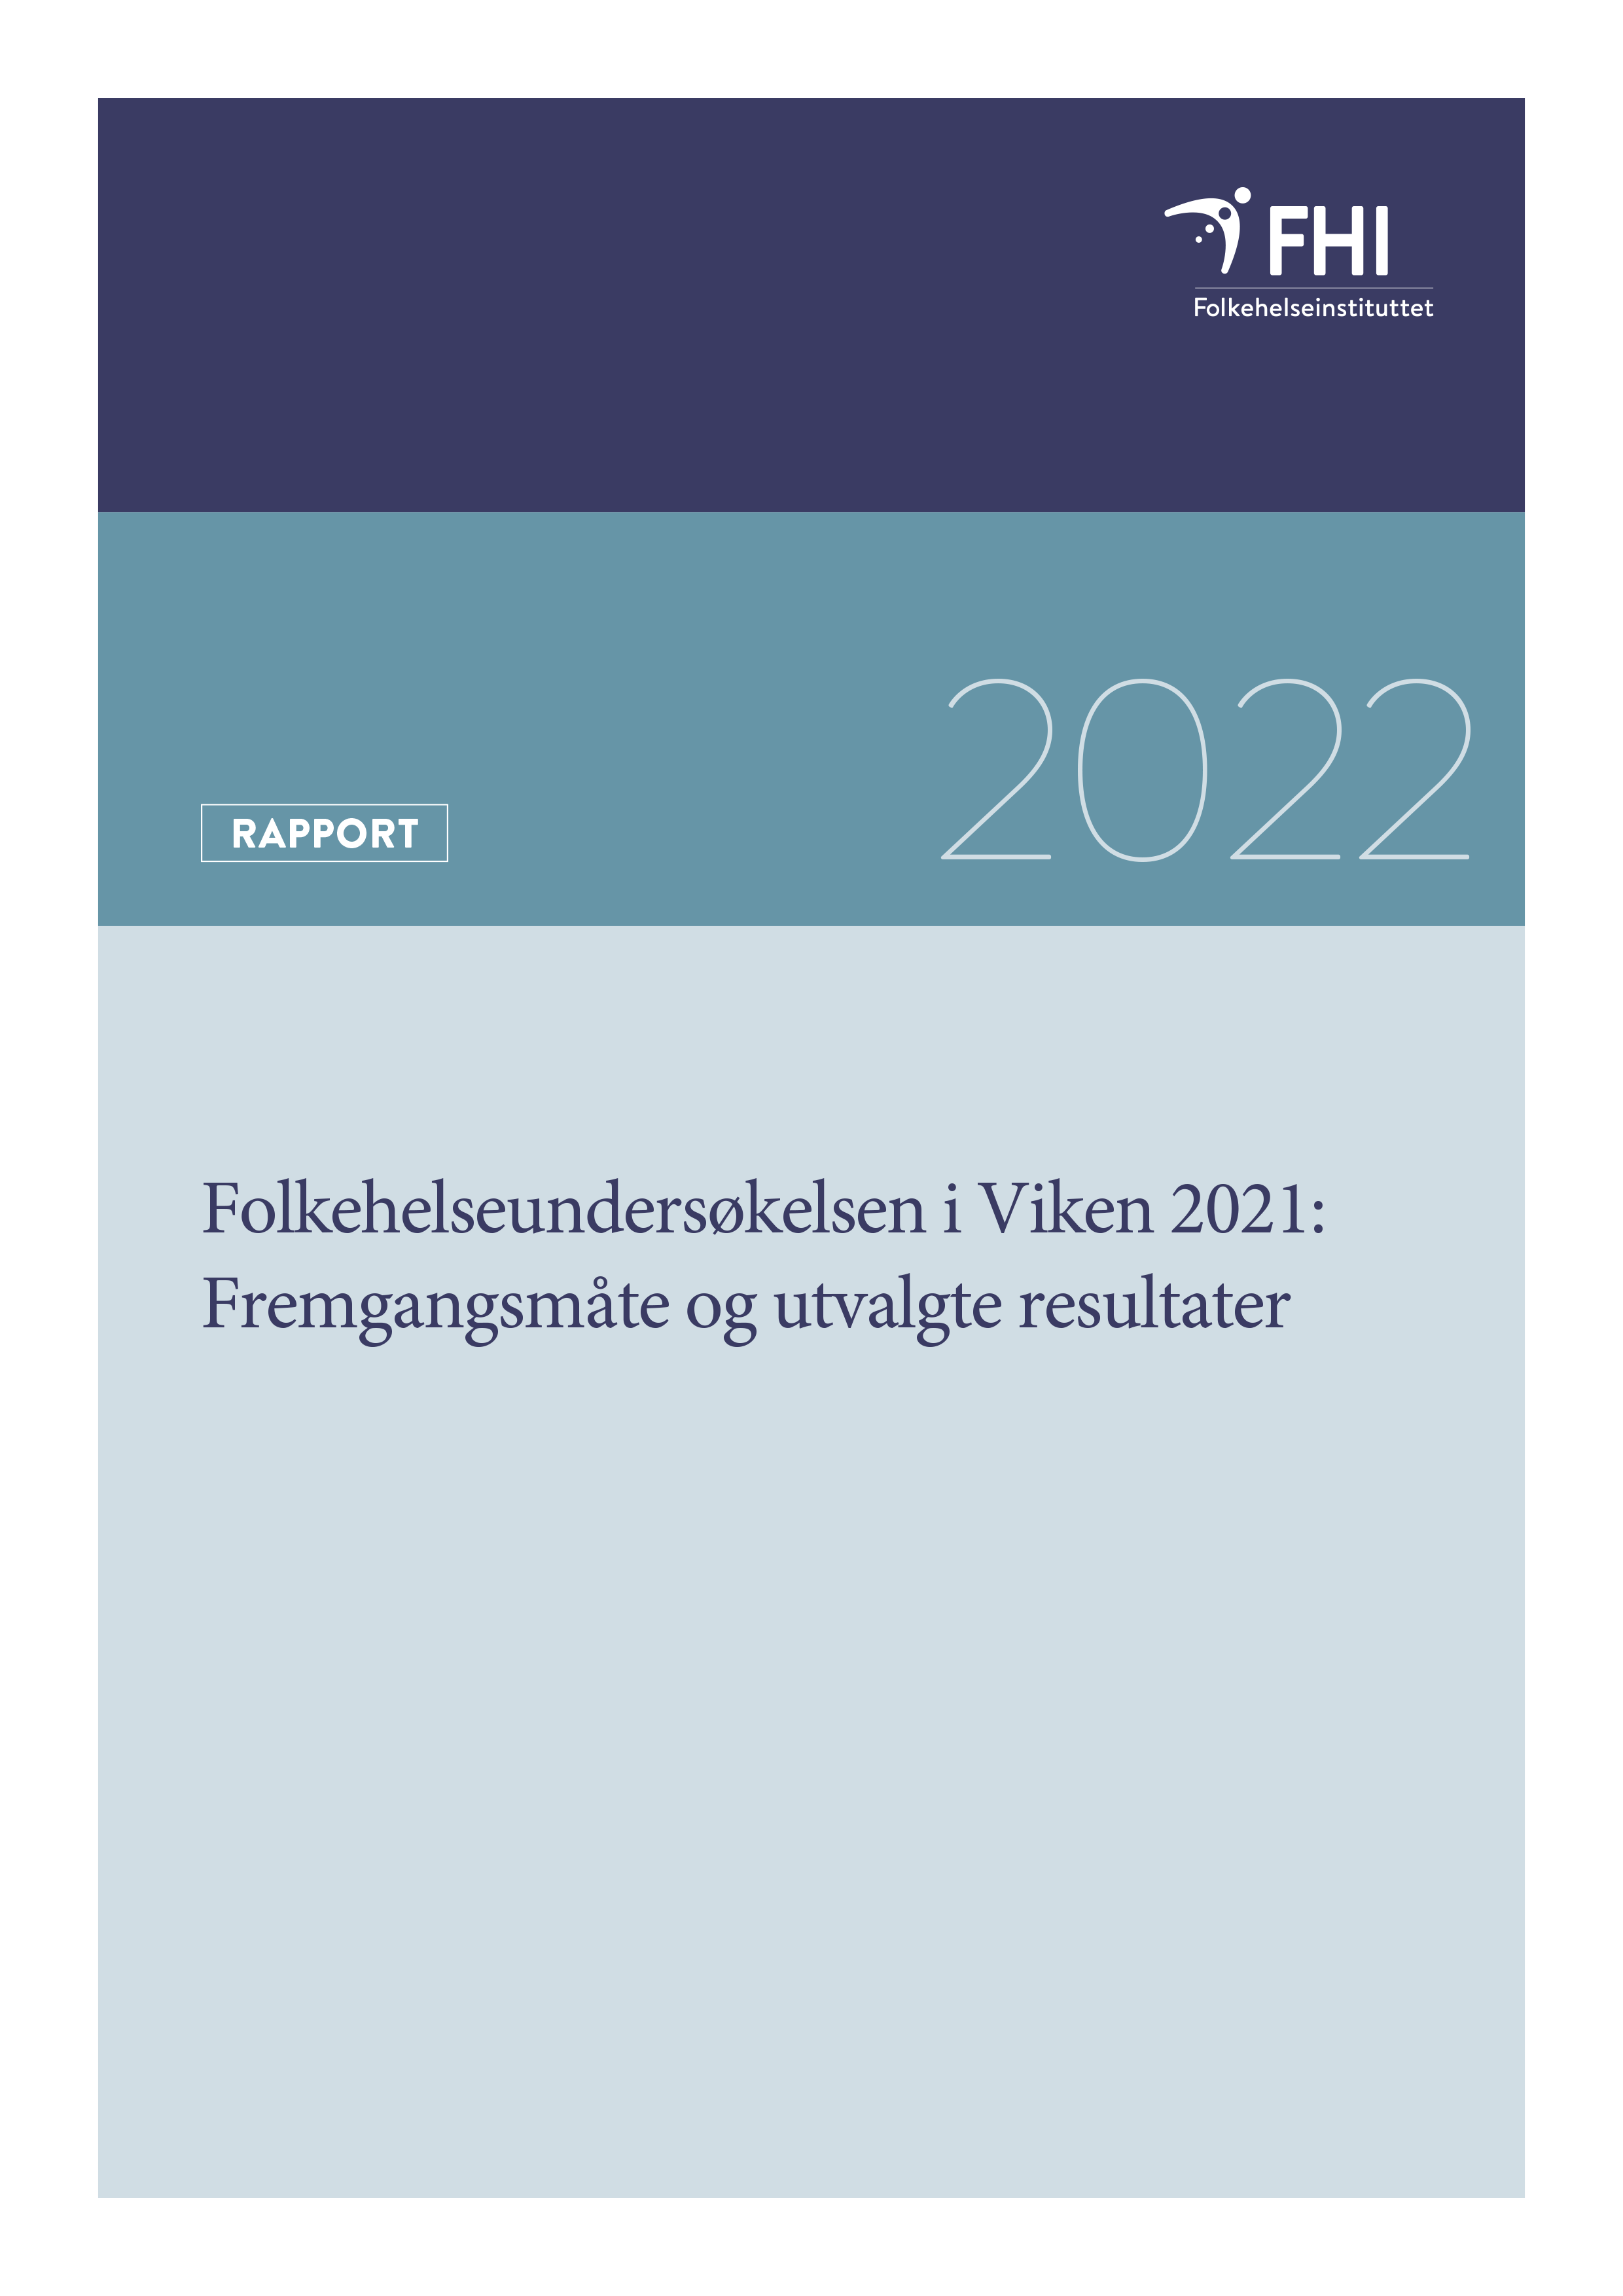 Folkehelseundersøkelsen i Viken 2021_rapport-1.png